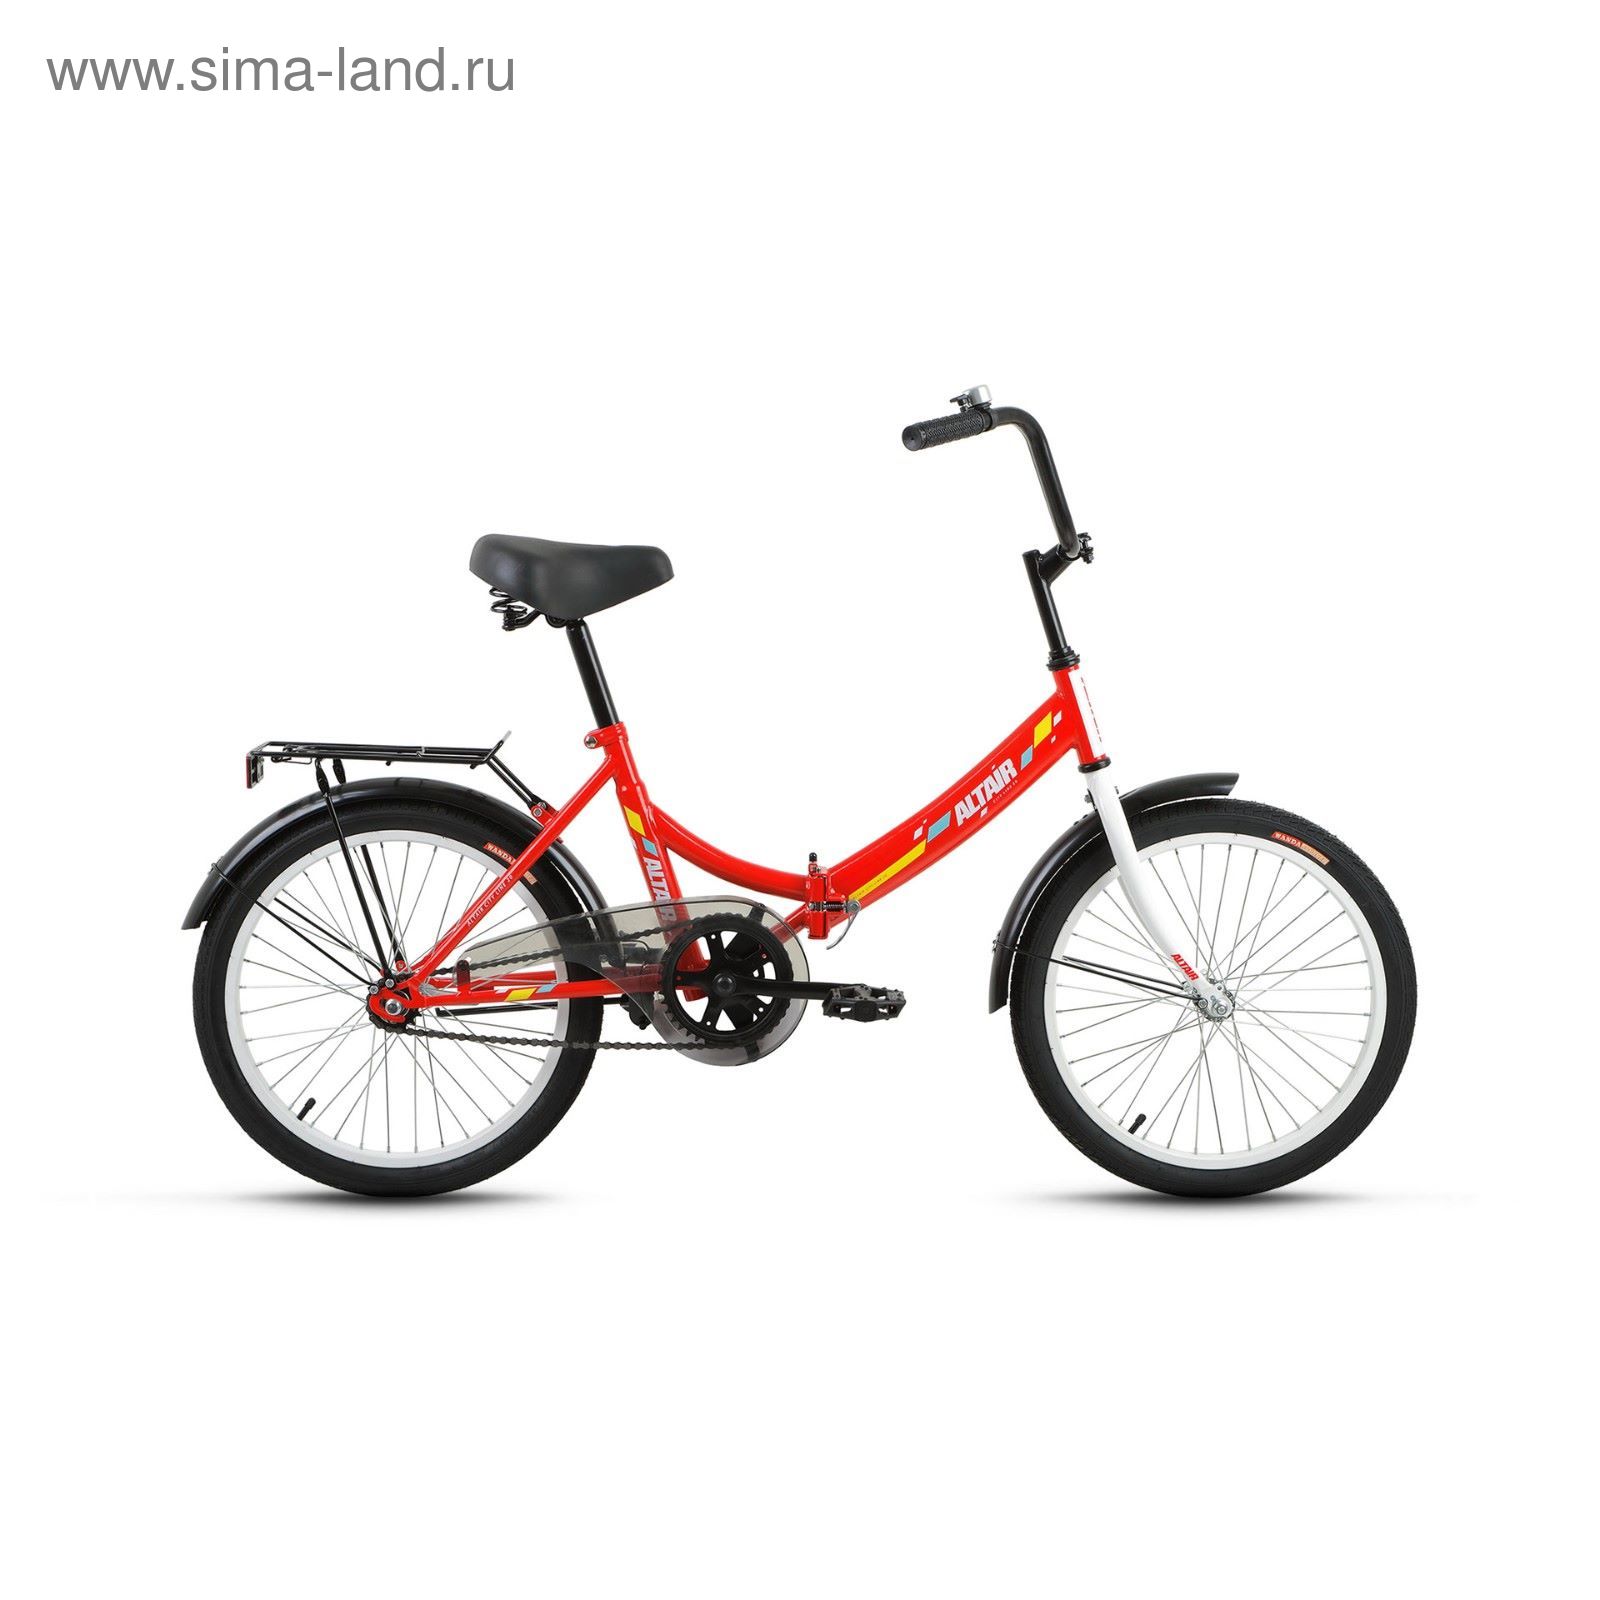 Велосипед 20" Altair City 20, 2017, цвет красный, размер 14"